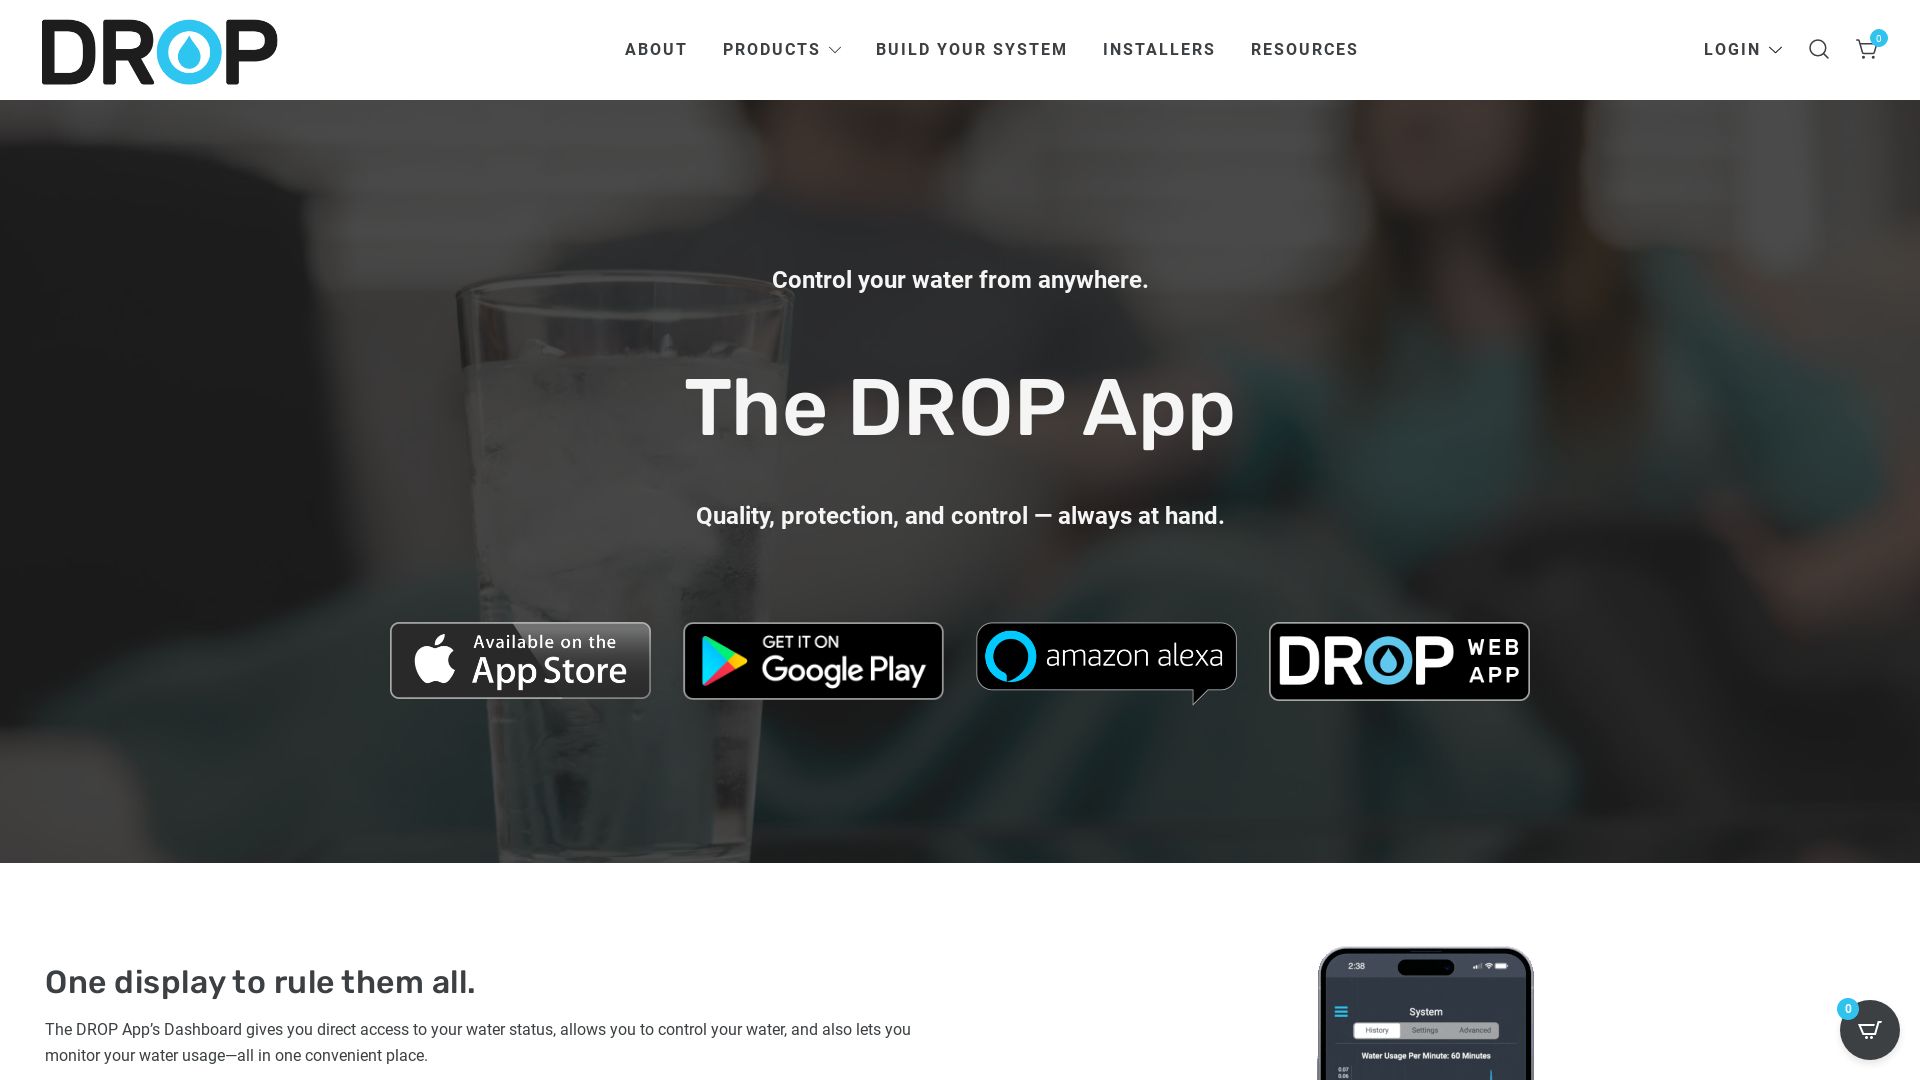 网站状态 drop.io 是  在线的